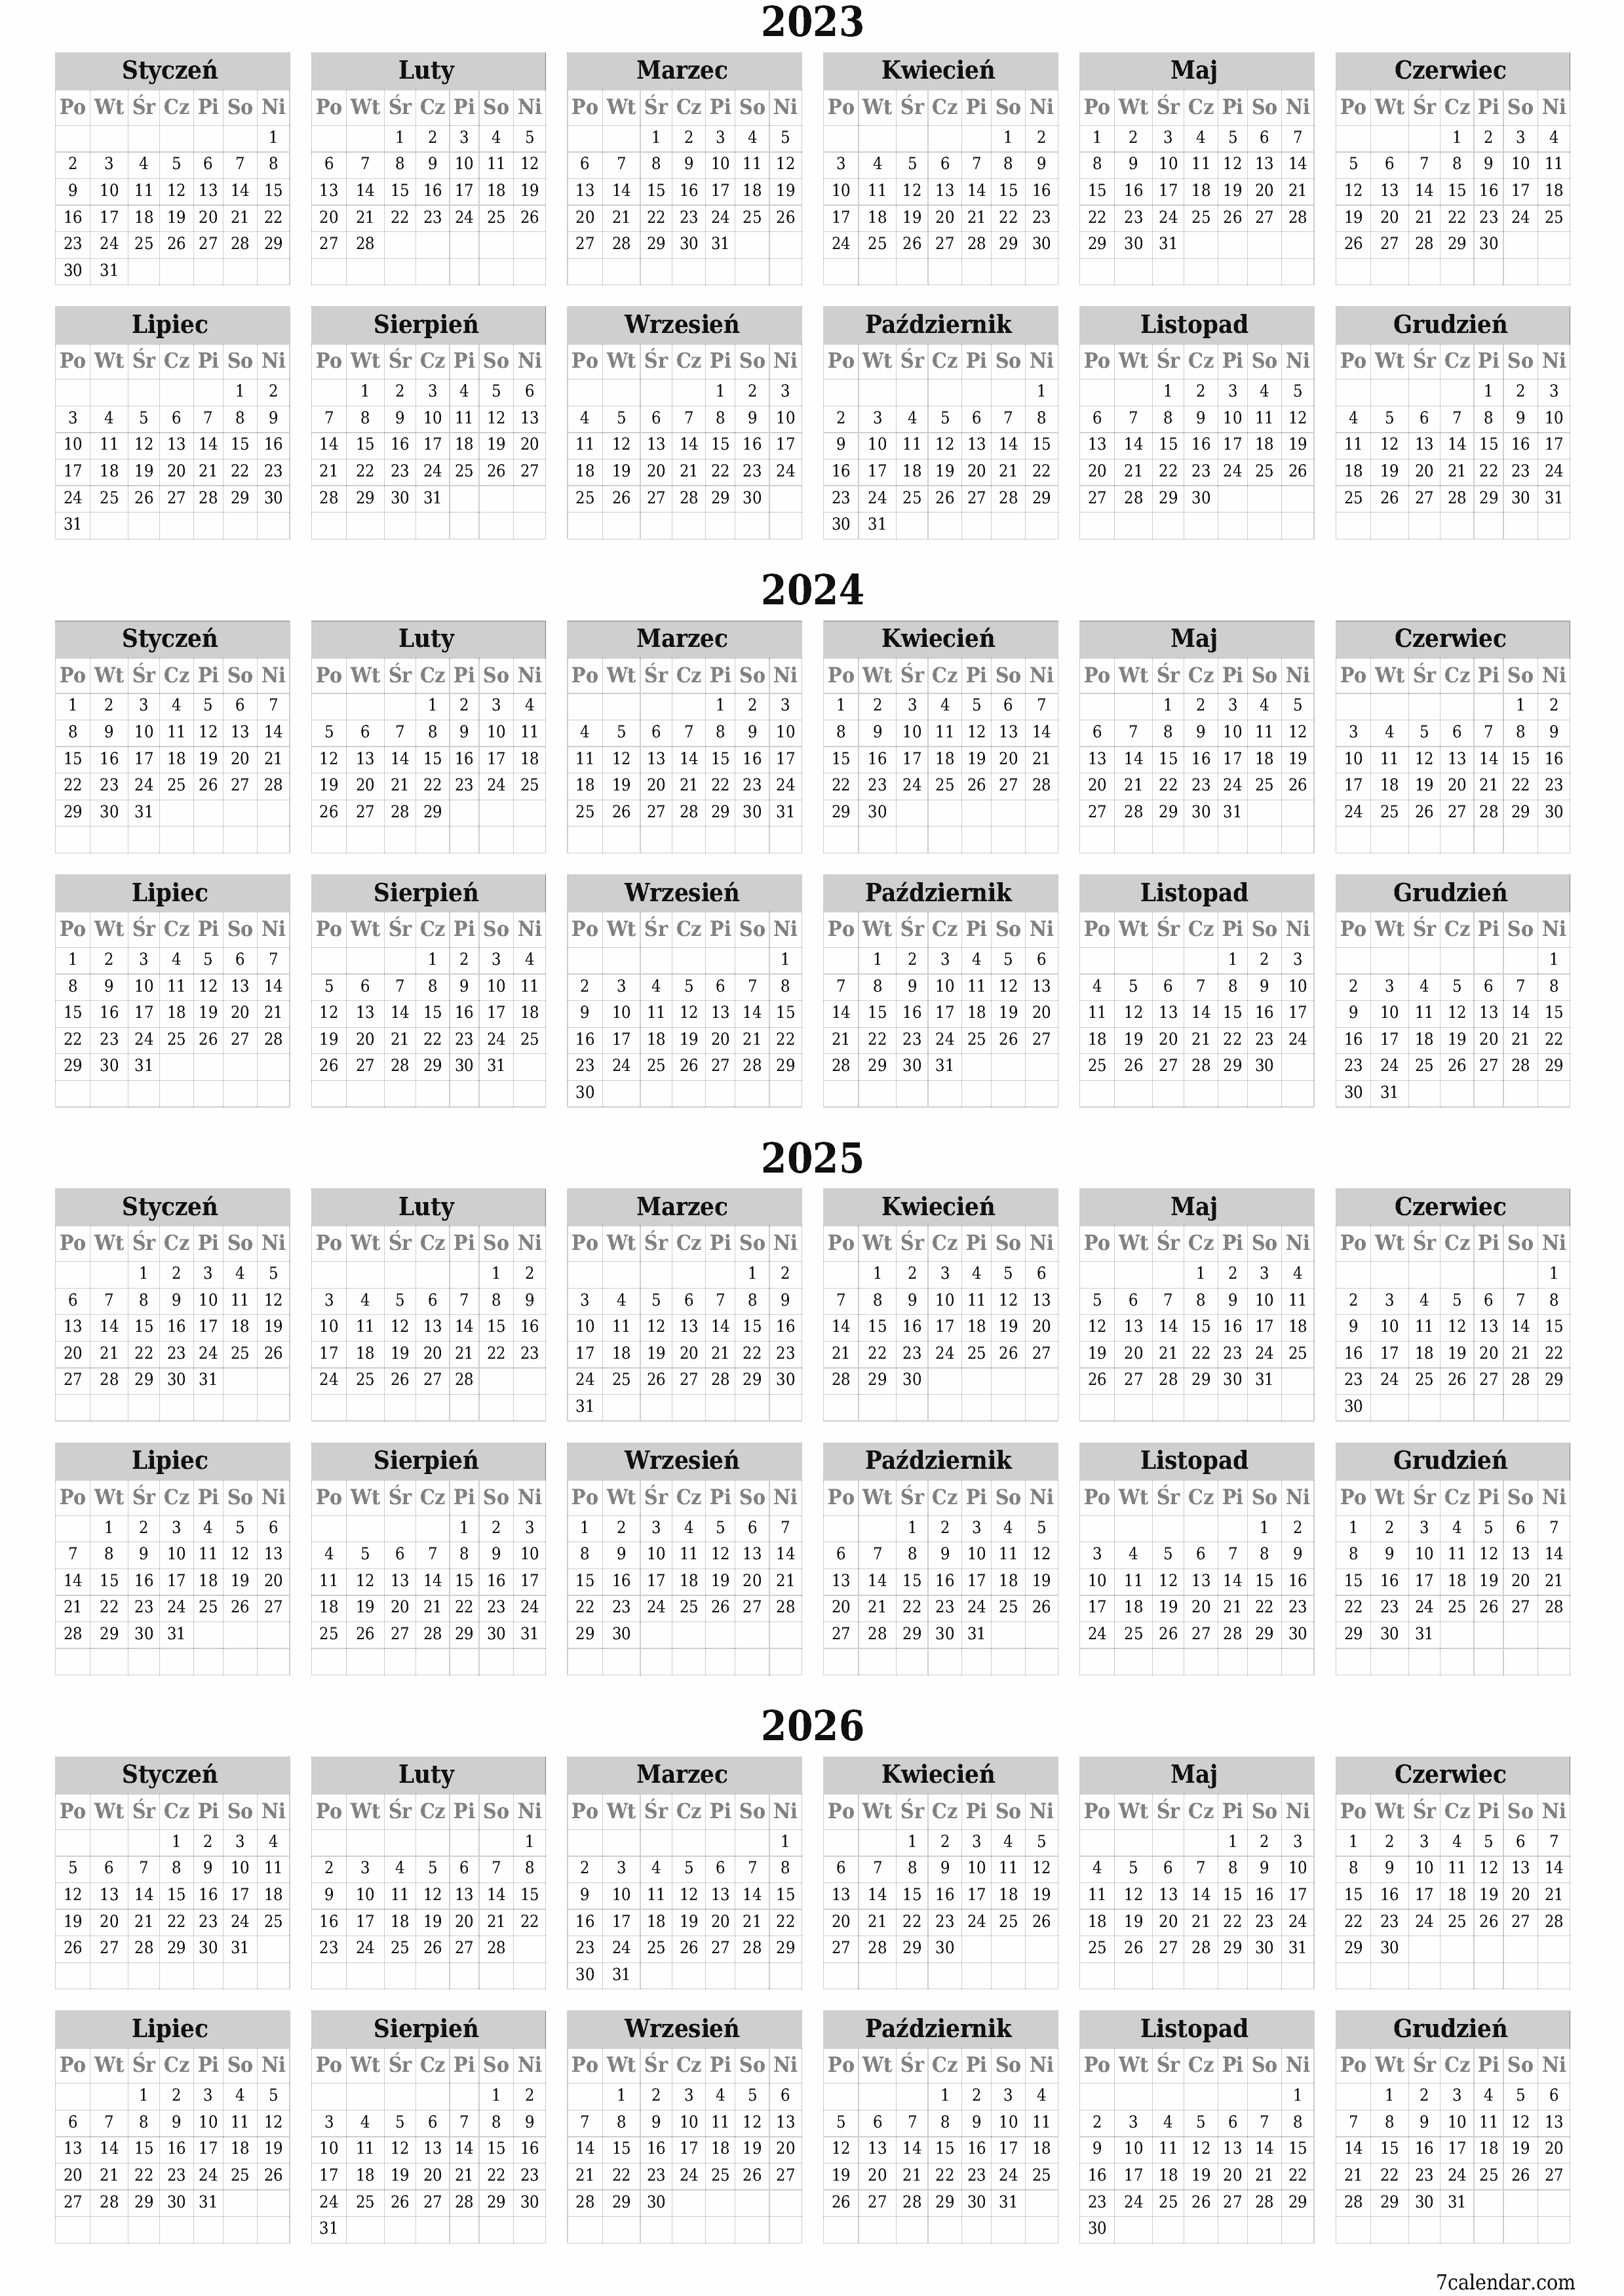  do druku ścienny szablon a darmowy pionowy Yearly kalendarz Wrzesień (Wrz) 2023